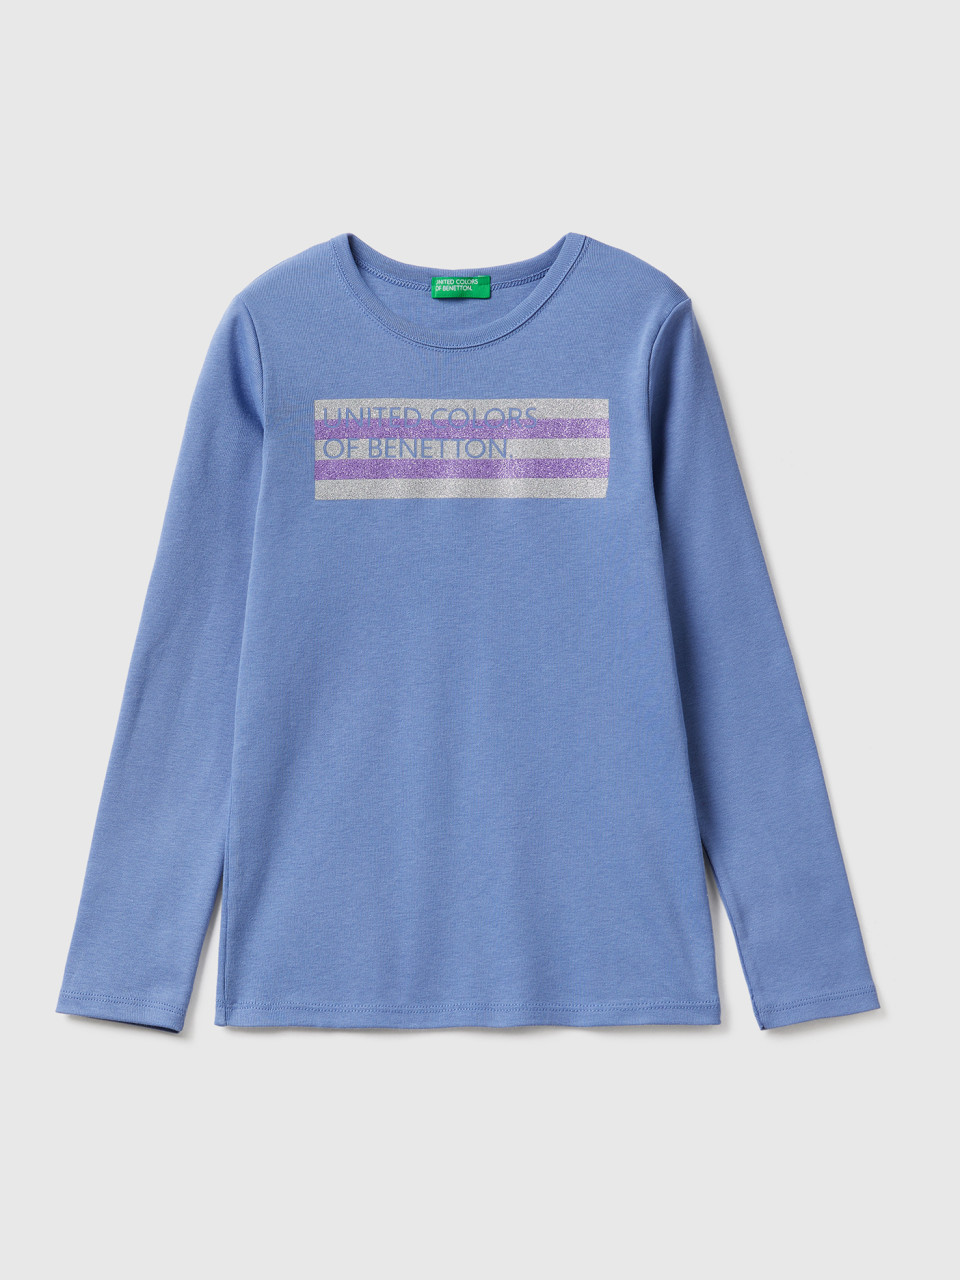 Benetton, Long Sleeve T-shirt With Glitter Print, Light Blue, Kids